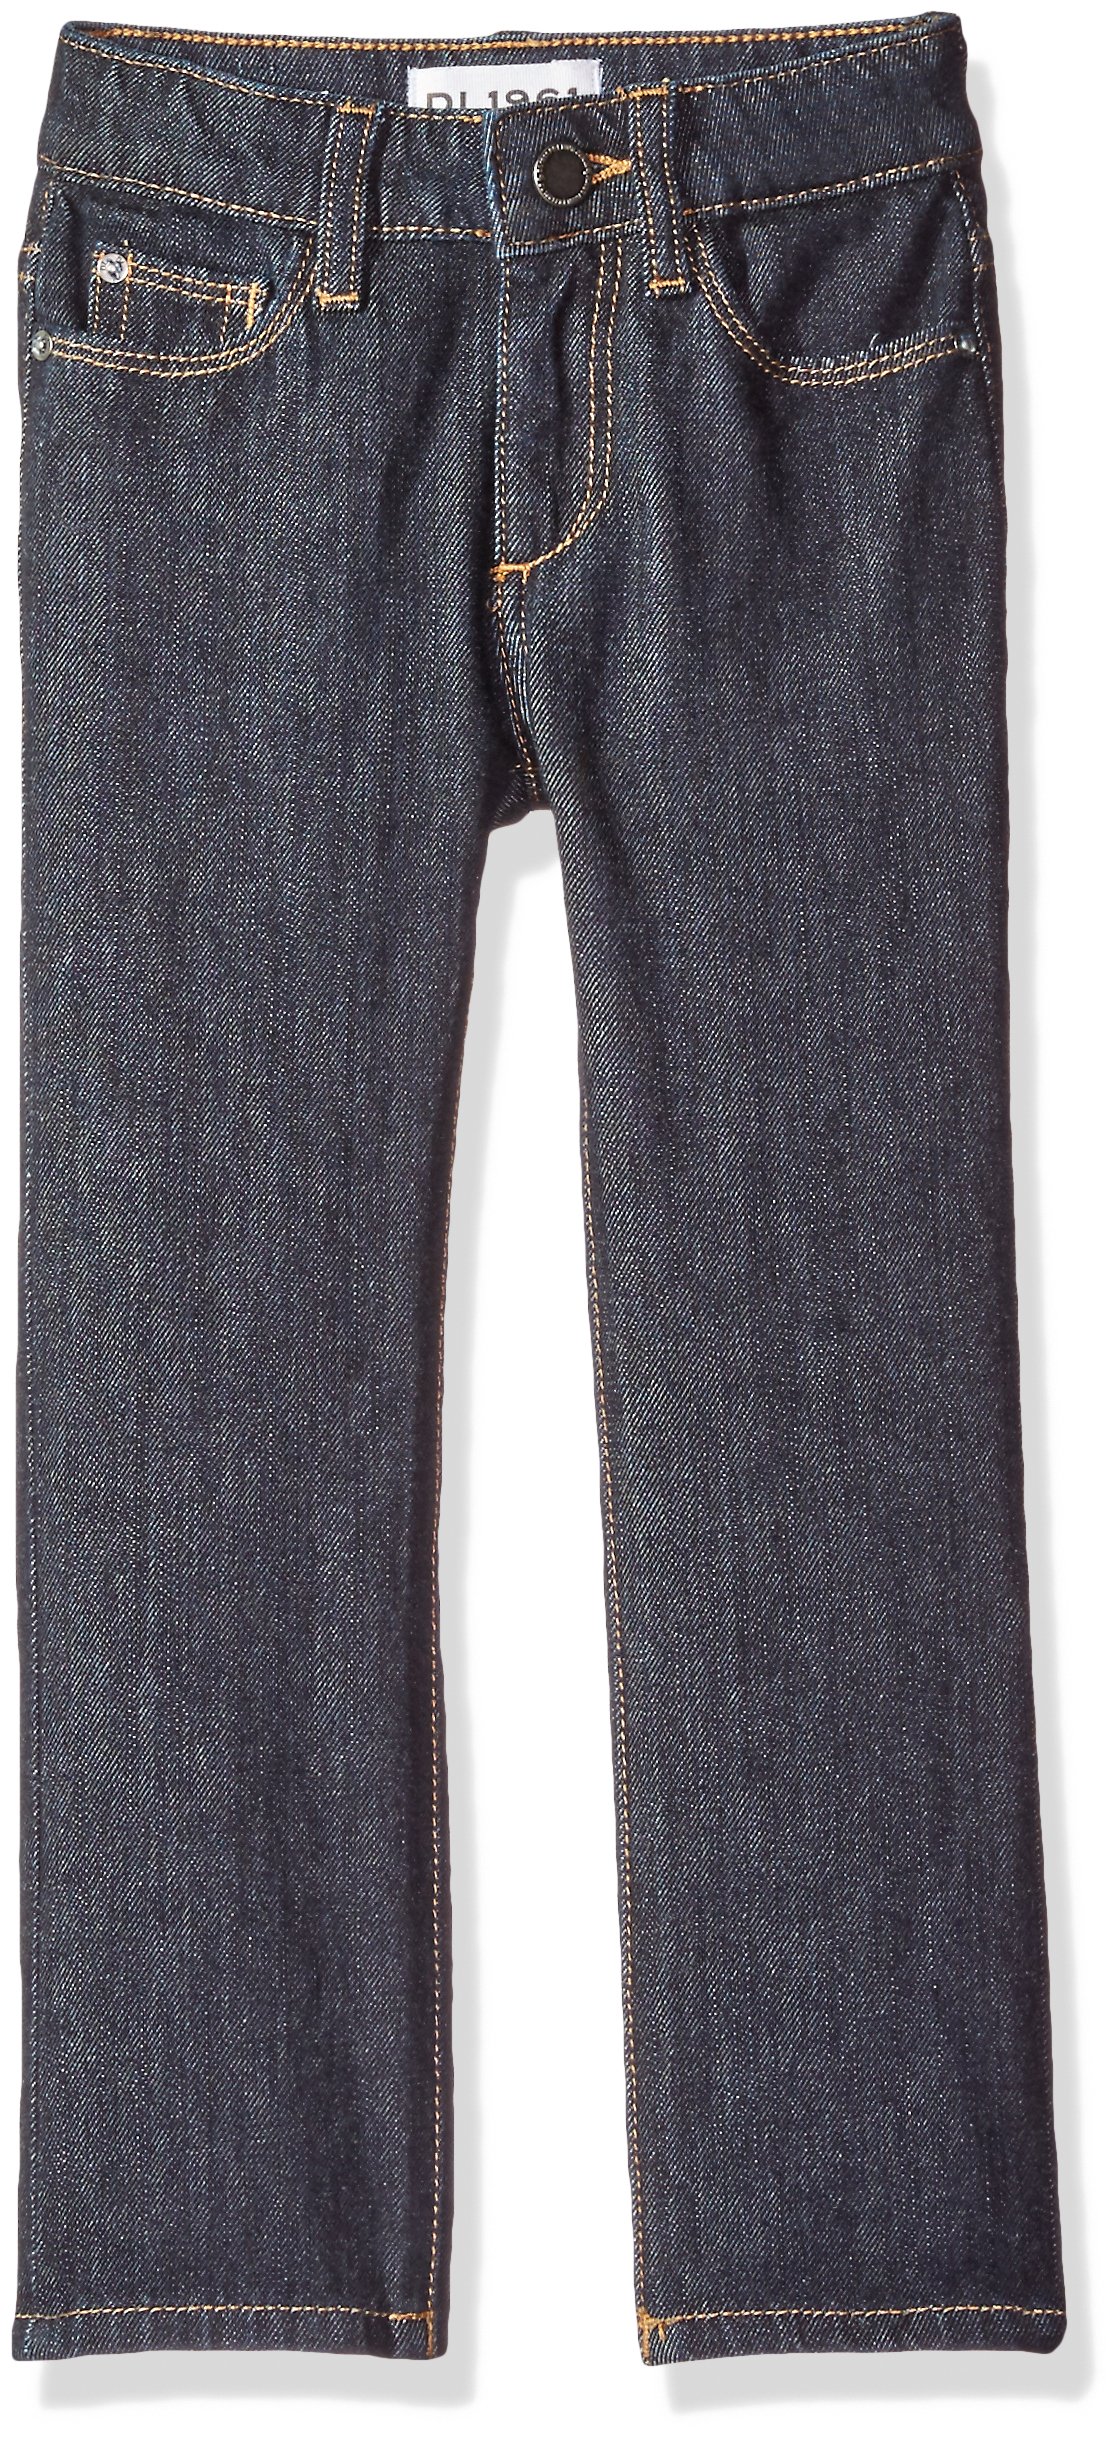 DL 1961 Toddler Boys' Hawke Skinny Jeans, Miller, 6 - image 2 of 3